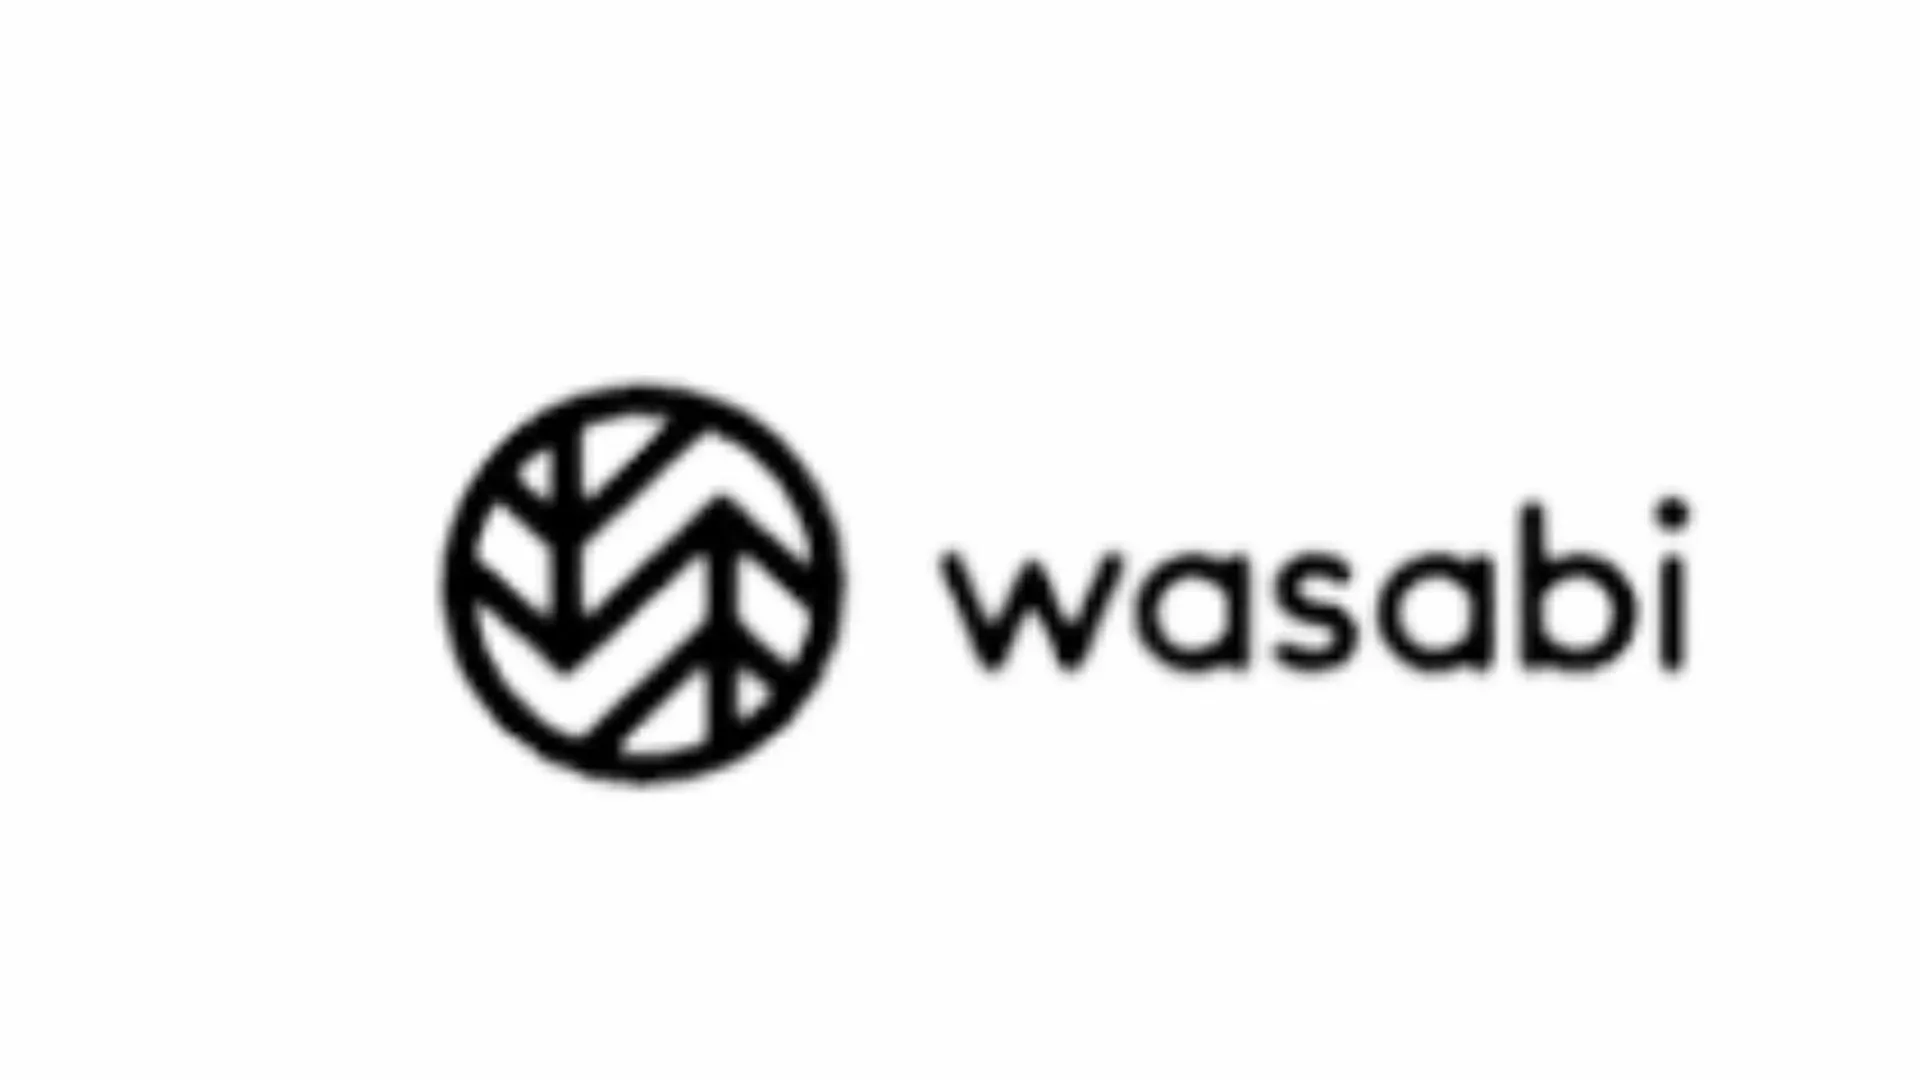 wasabi logo cutout